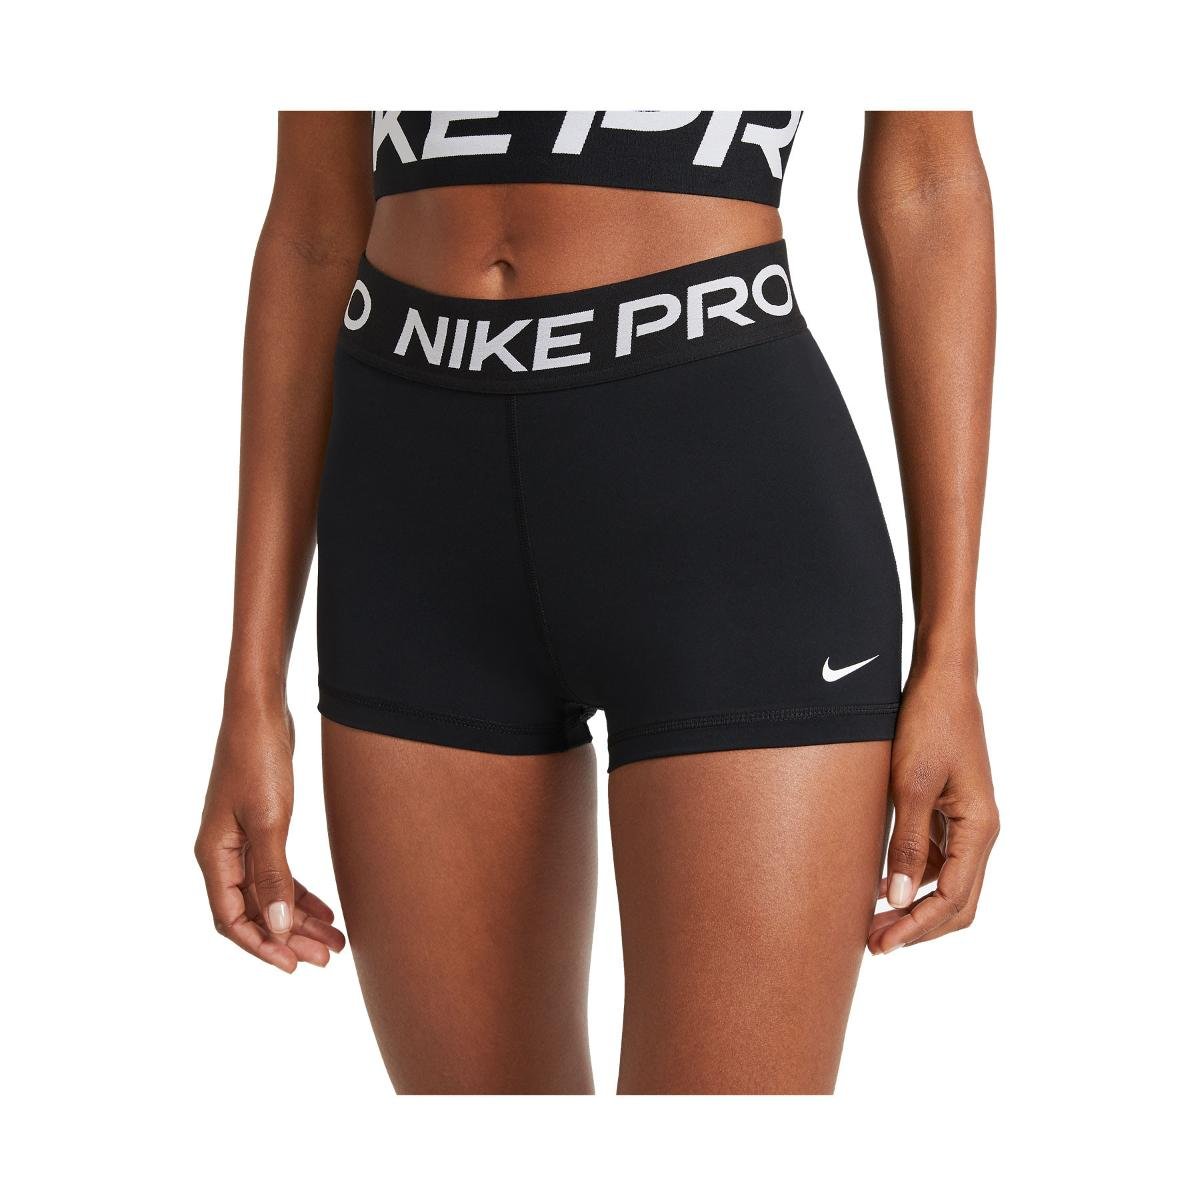 Damskie Spodenki Nike Pro W Short [xs] - Ceny i opinie 